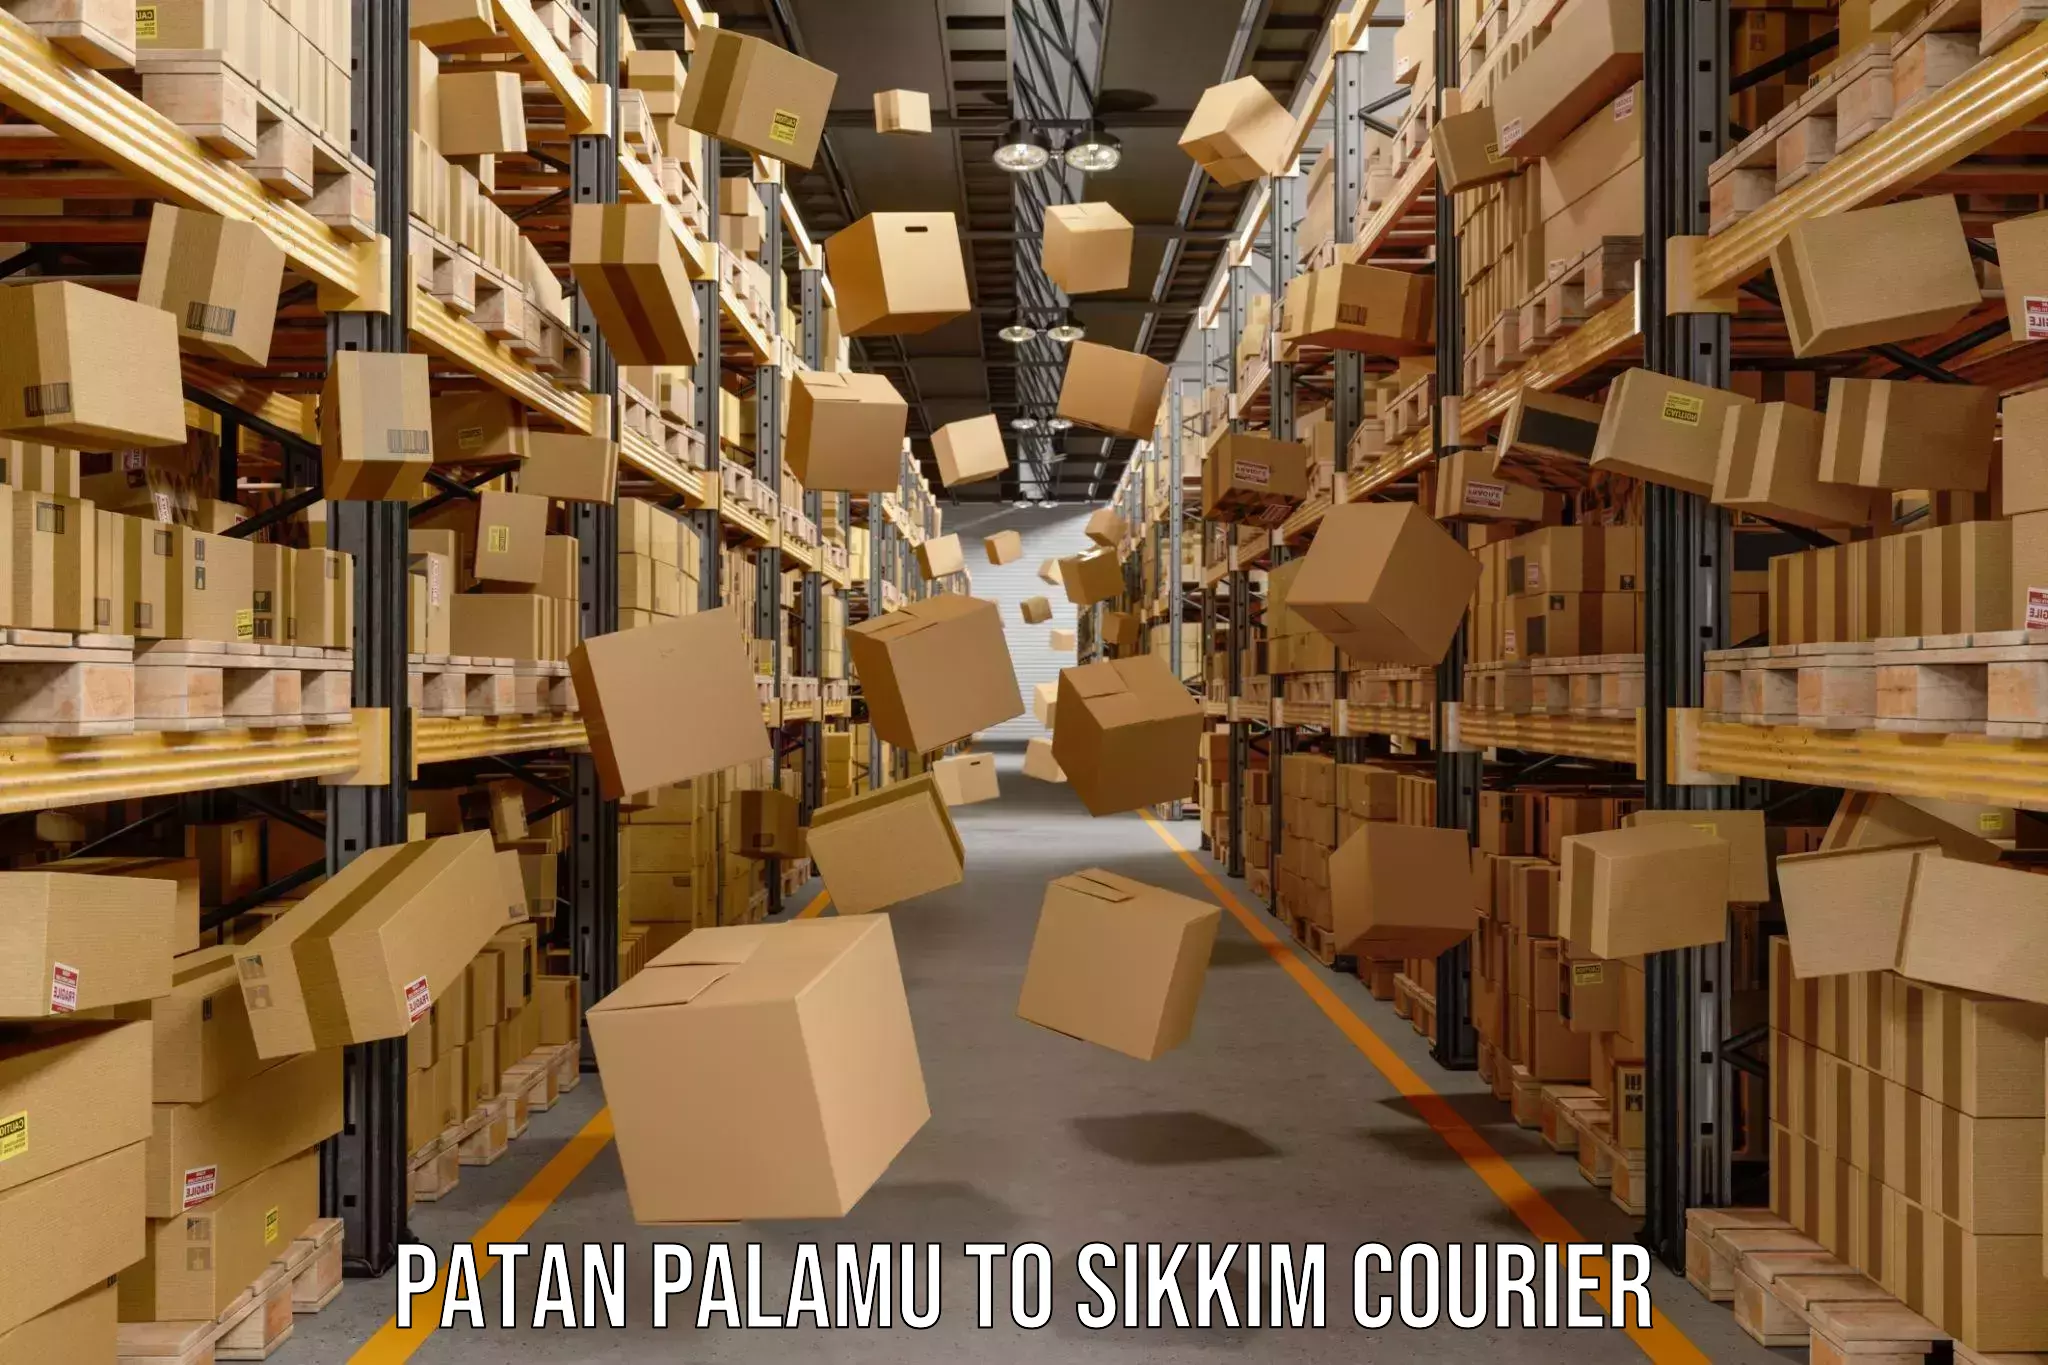 Advanced shipping network Patan Palamu to Sikkim